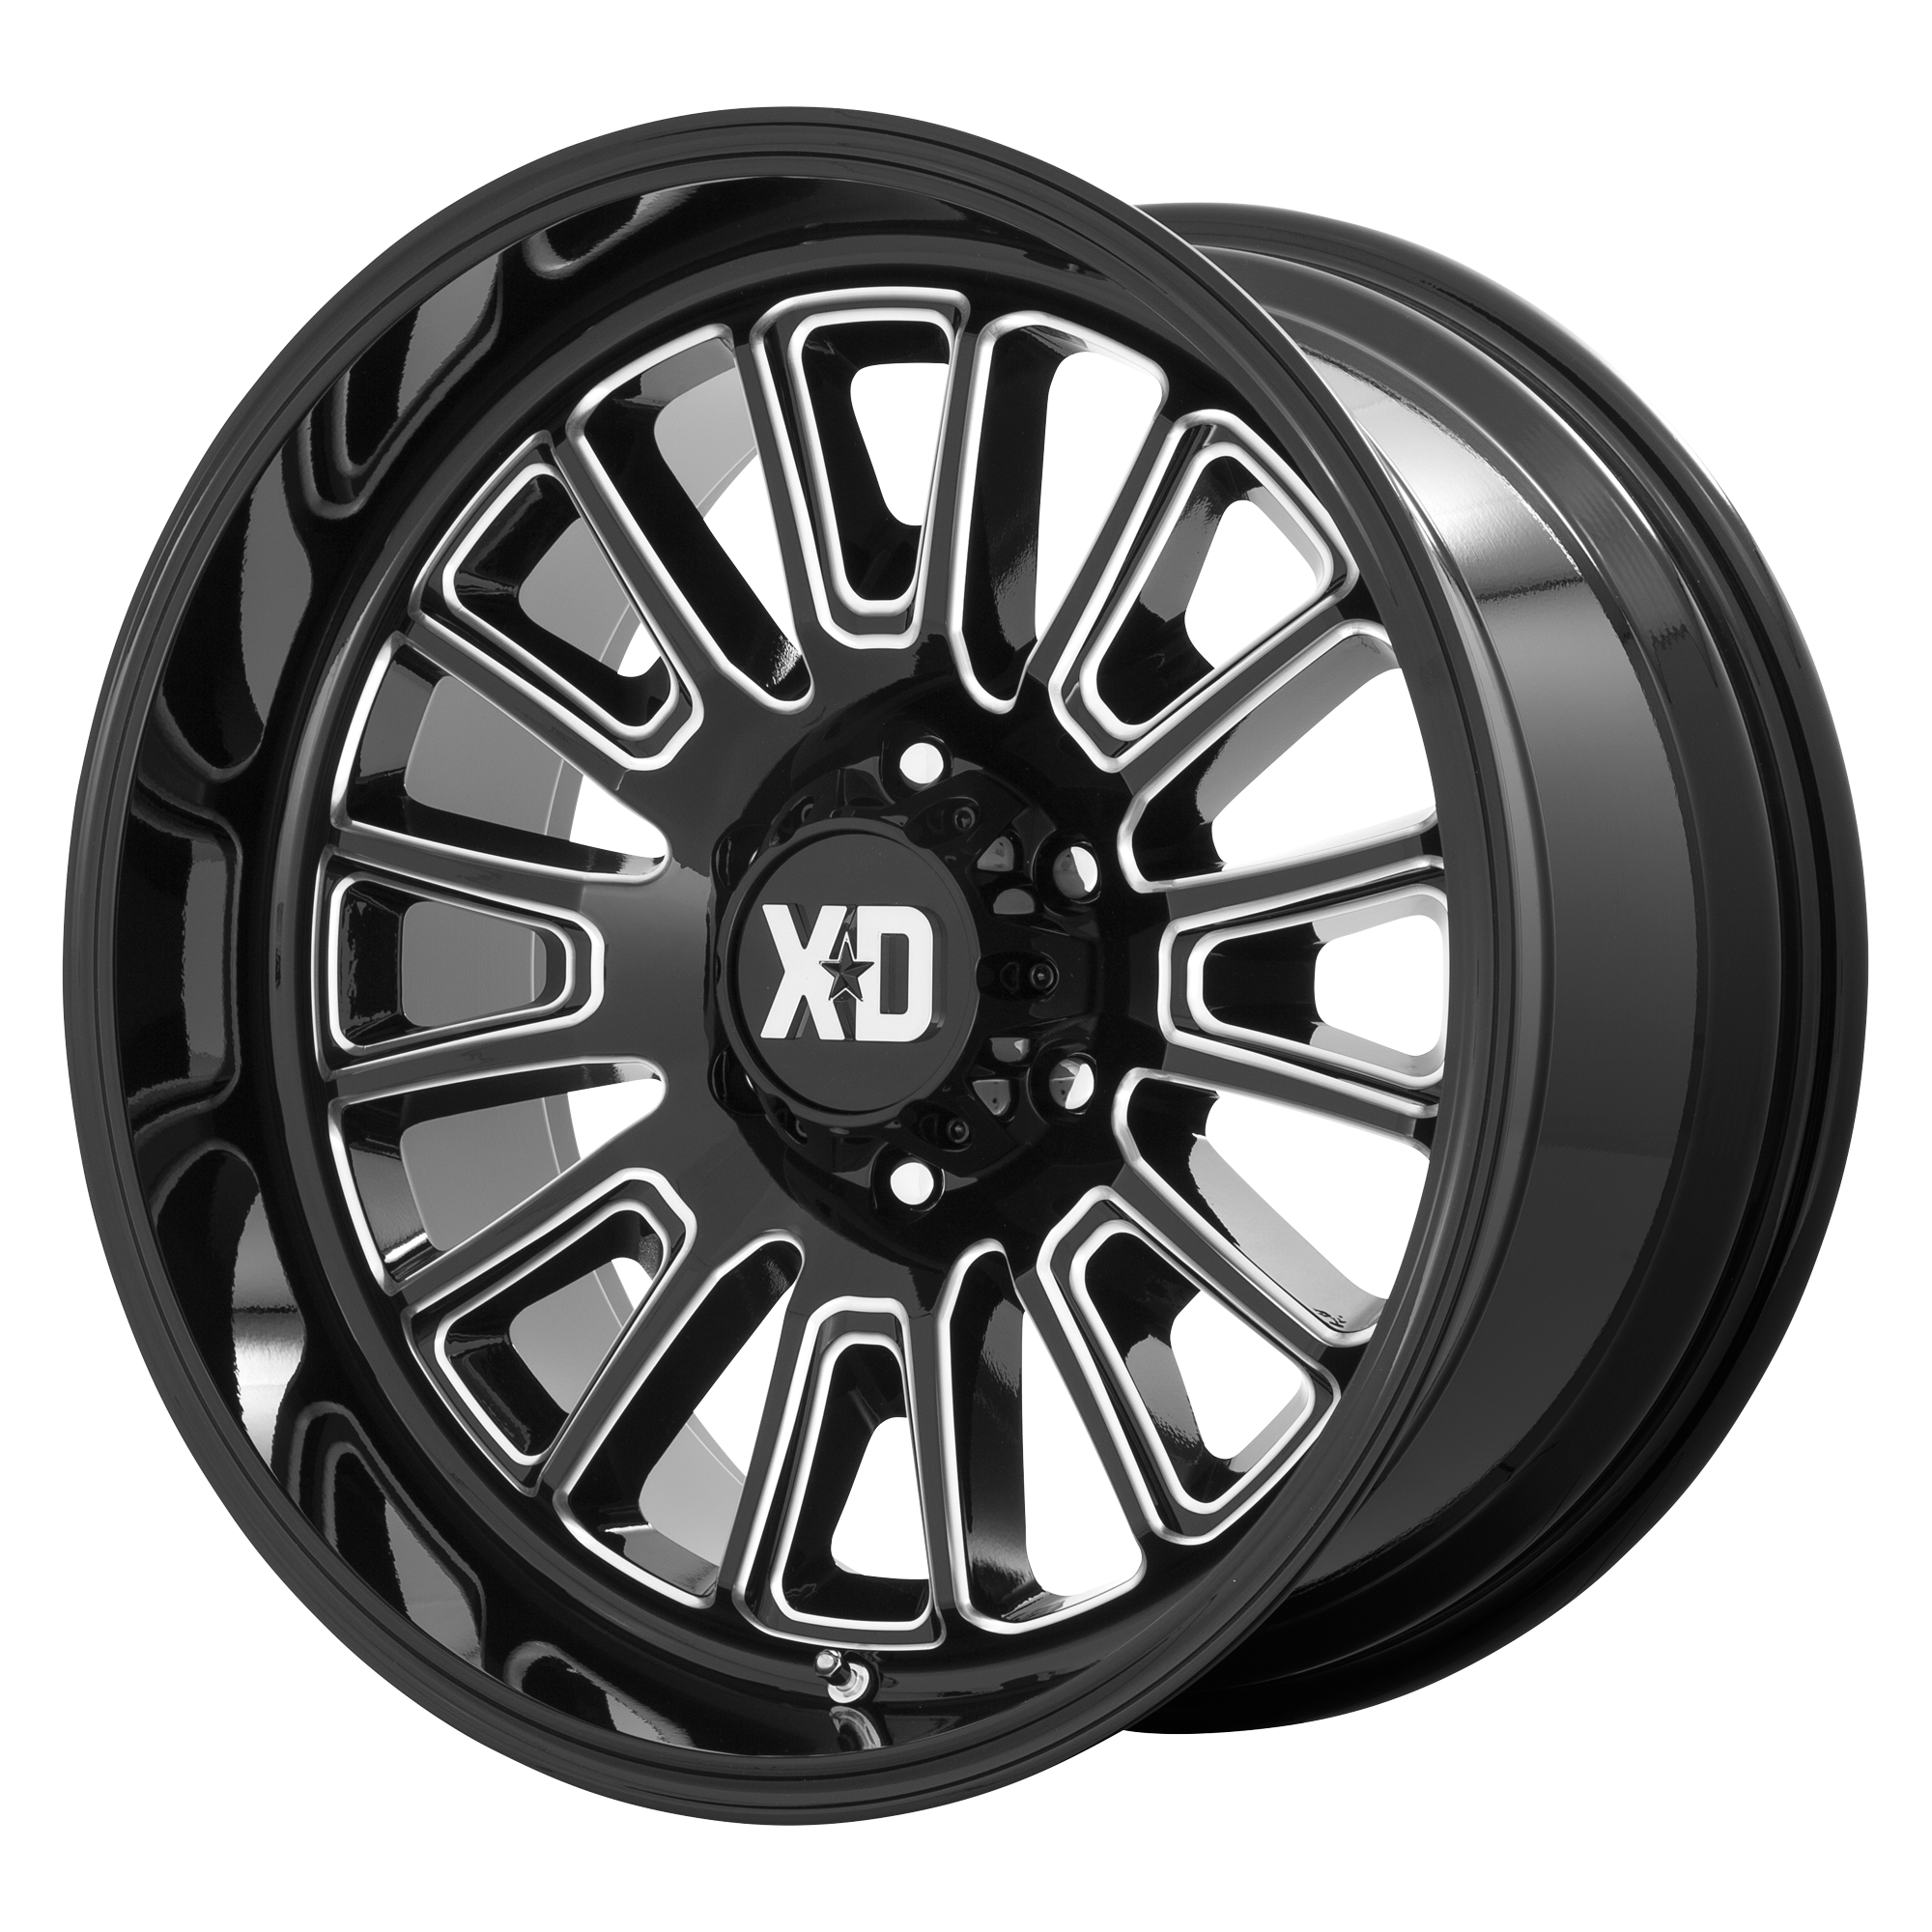 XD 22"x12" Non-Chrome Gloss Black Milled Custom Wheel ARSWCWXD86422268344N